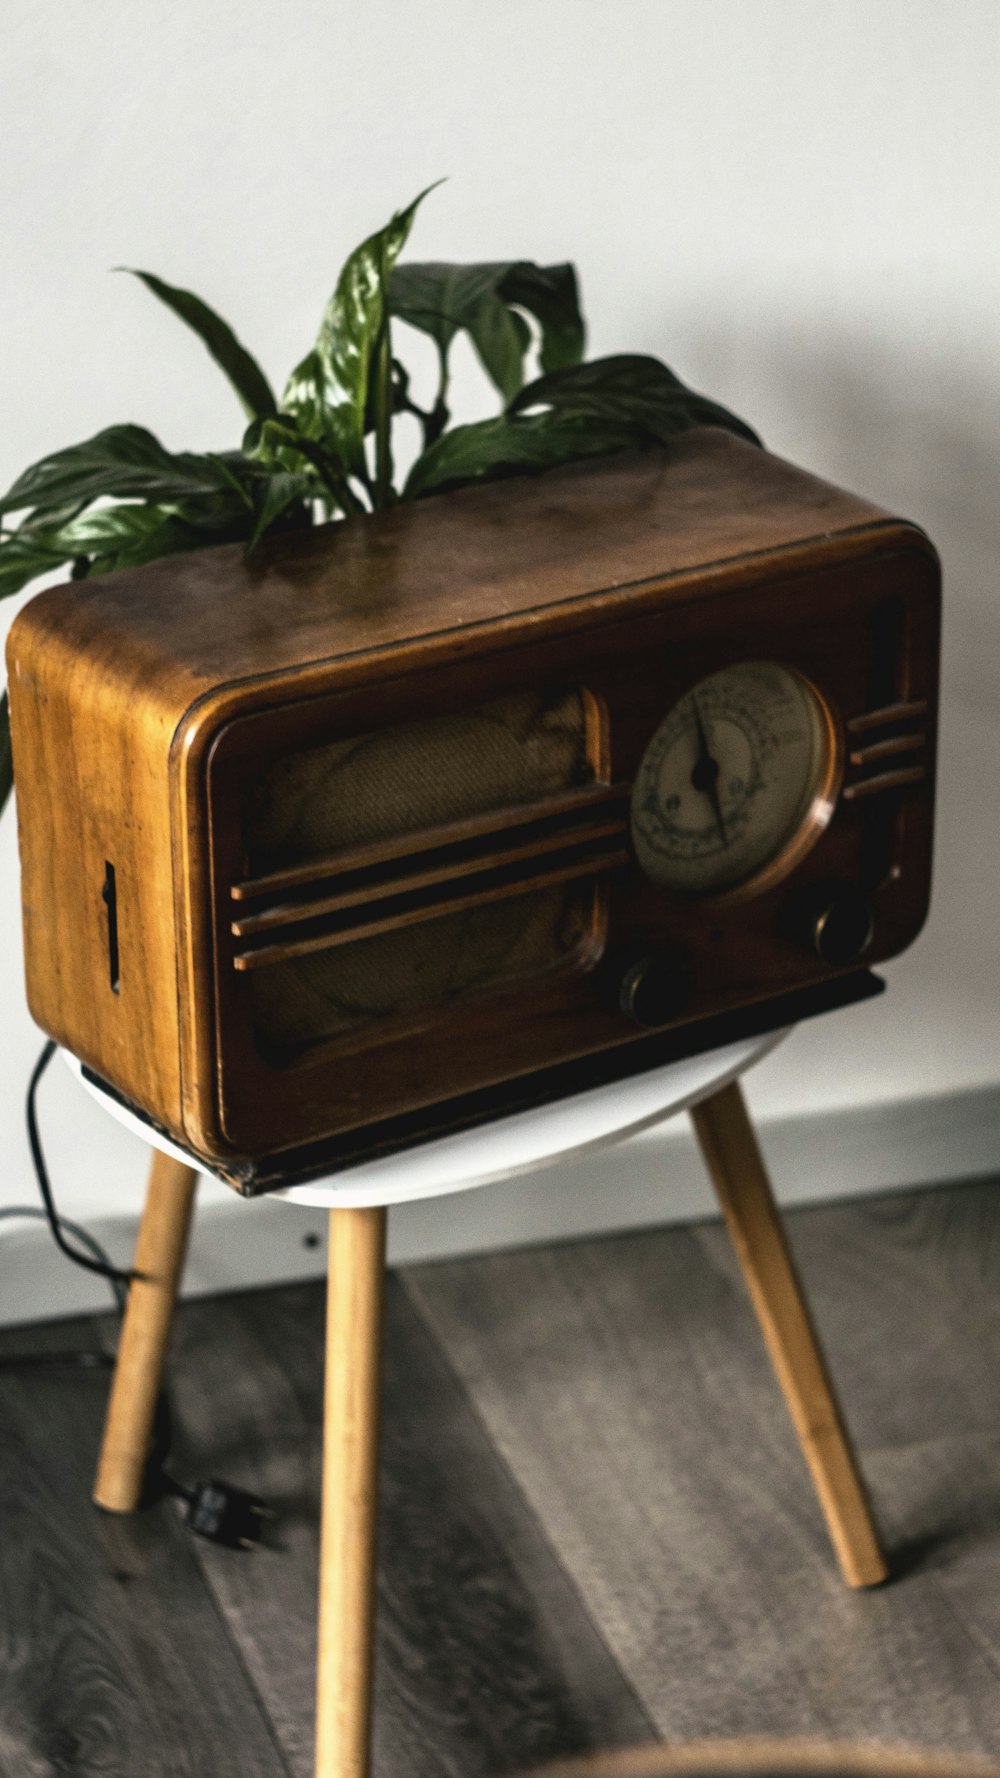 brown wooden analog clock at 10 00